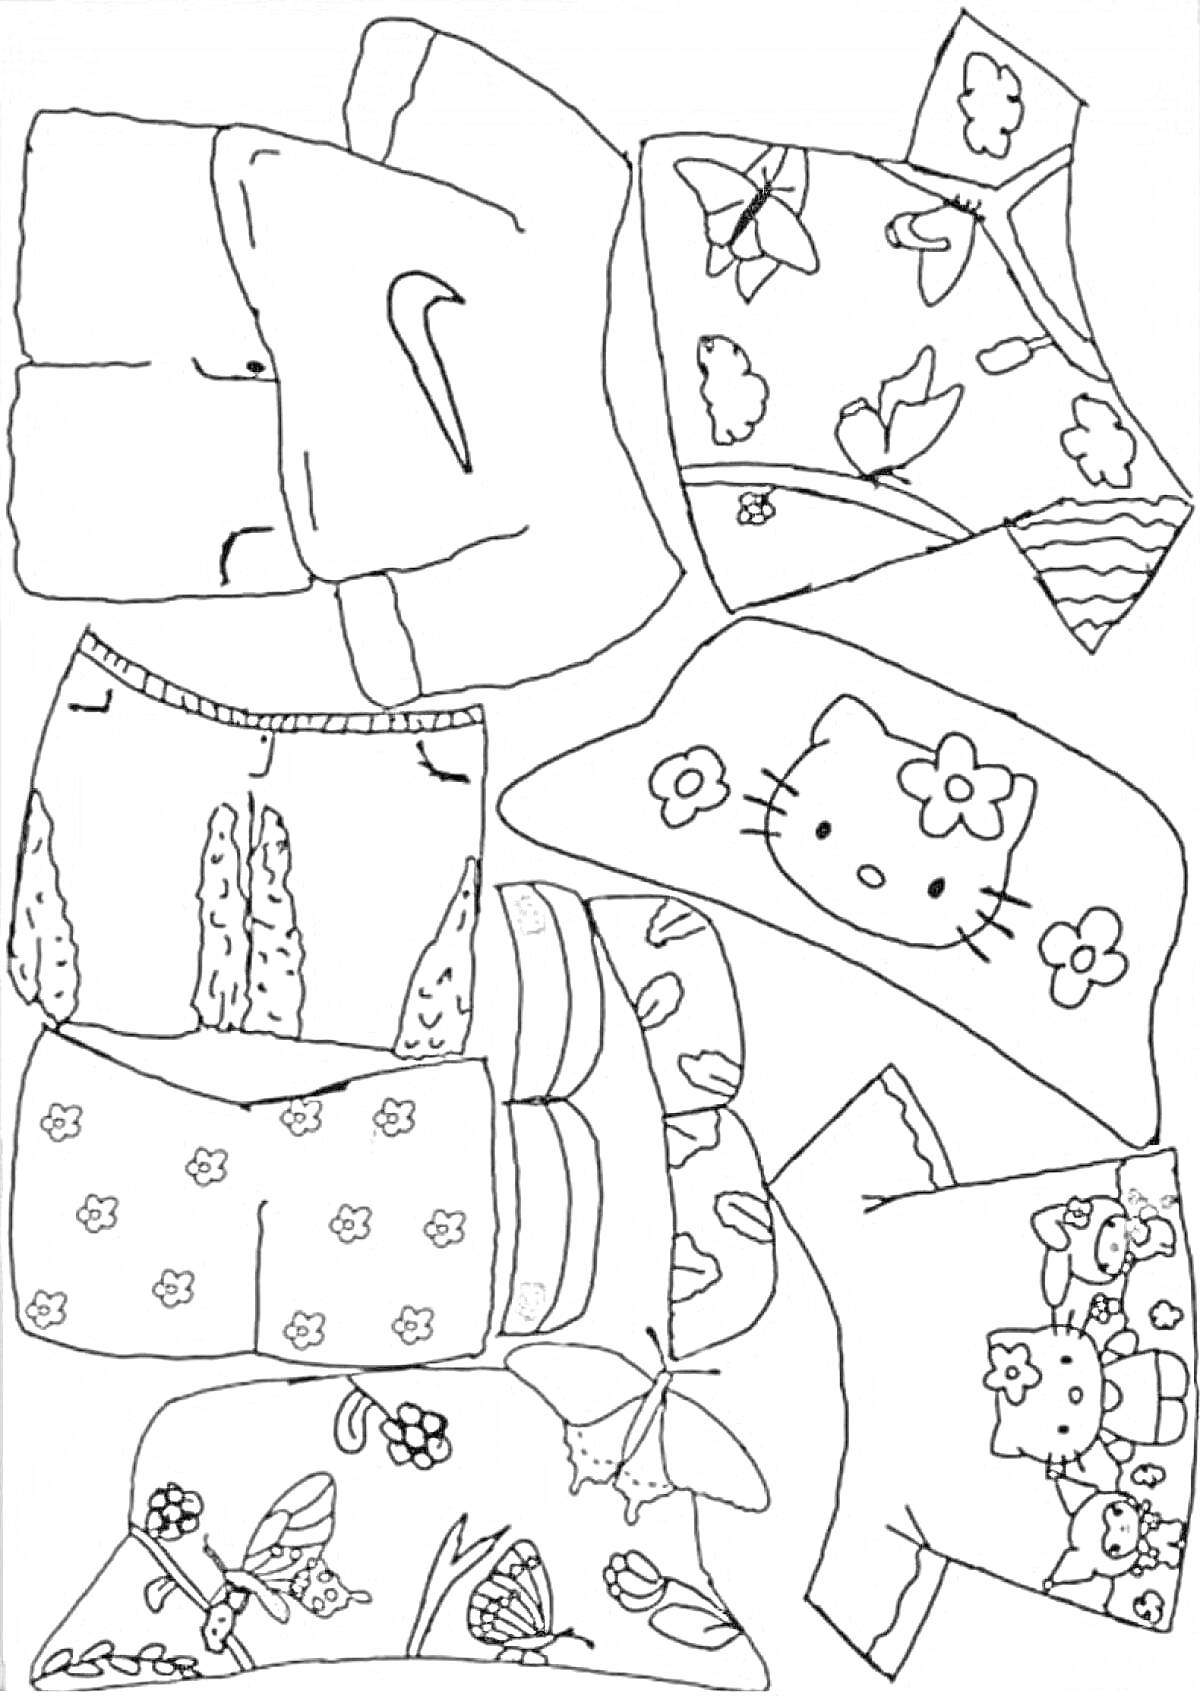 одежда для уточки лалафанфан - футболка с логотипом, рубашка с цветочным принтом, шорты с рисунками кактусов, шорты с цветочным узором, панама с мультяшной кошечкой, комплект одежды с изображением клубники